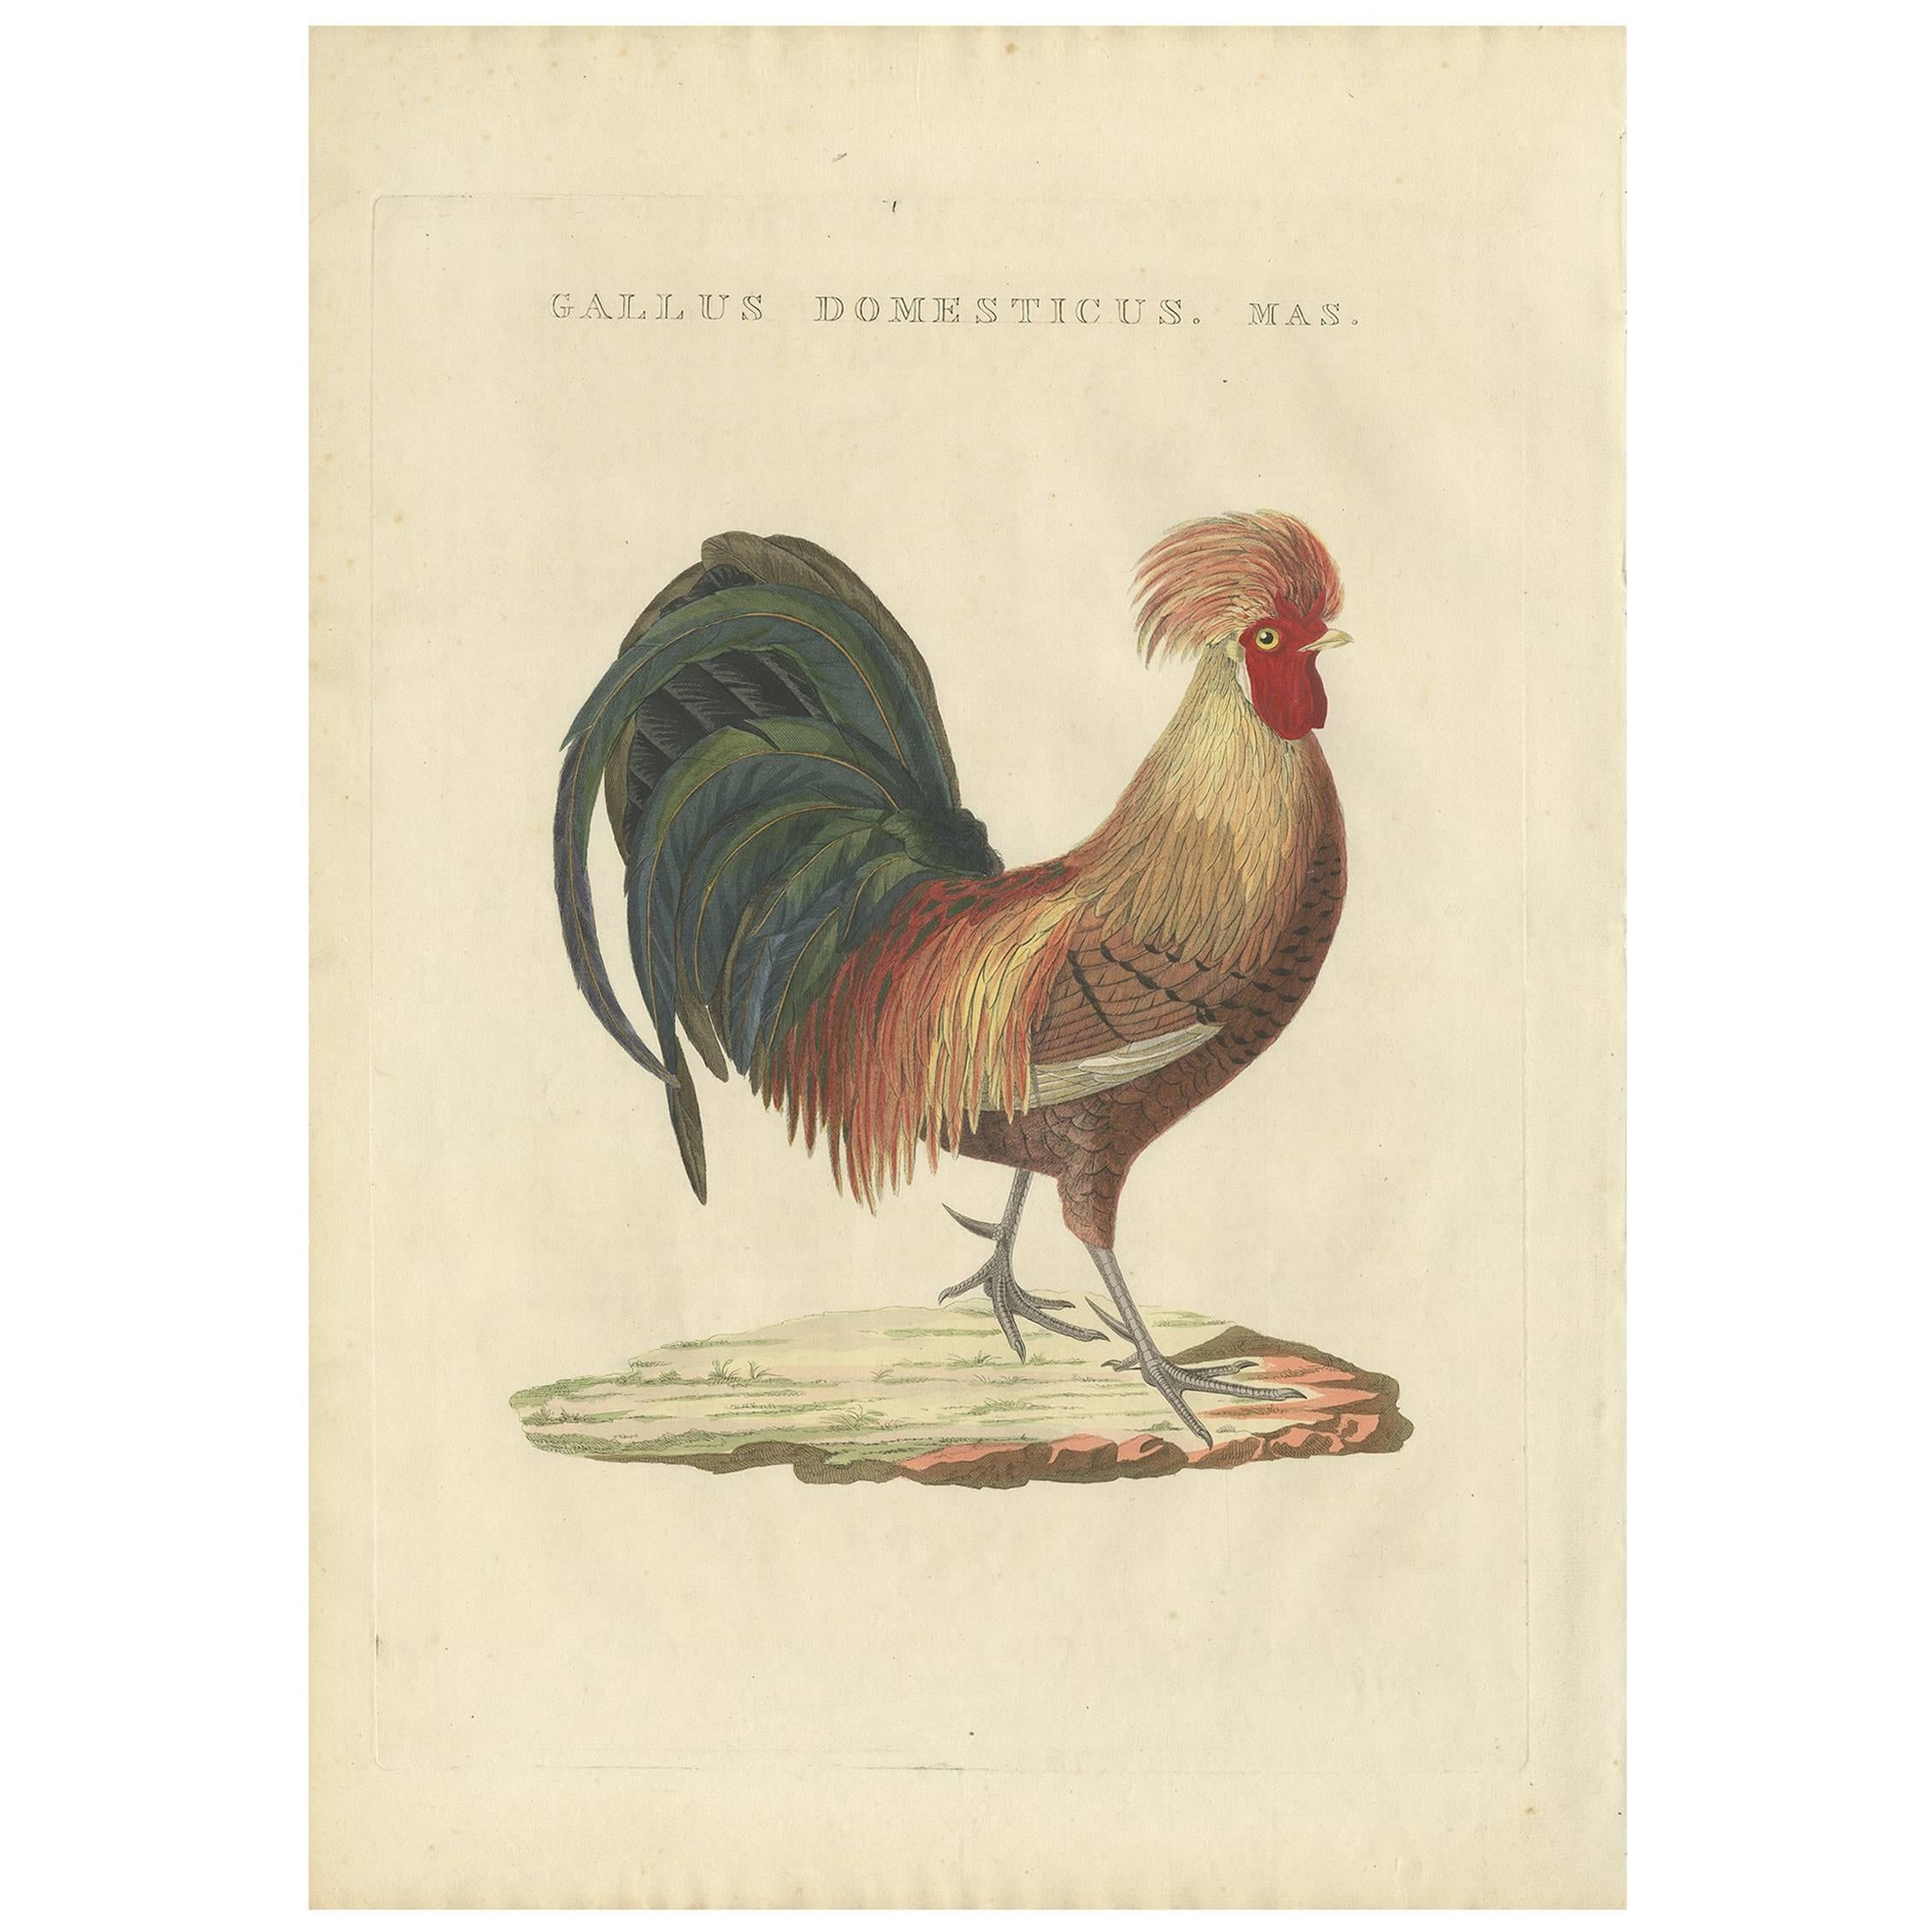 Impression oiseau antique d'un coq par Sepp & Nozeman, 1829